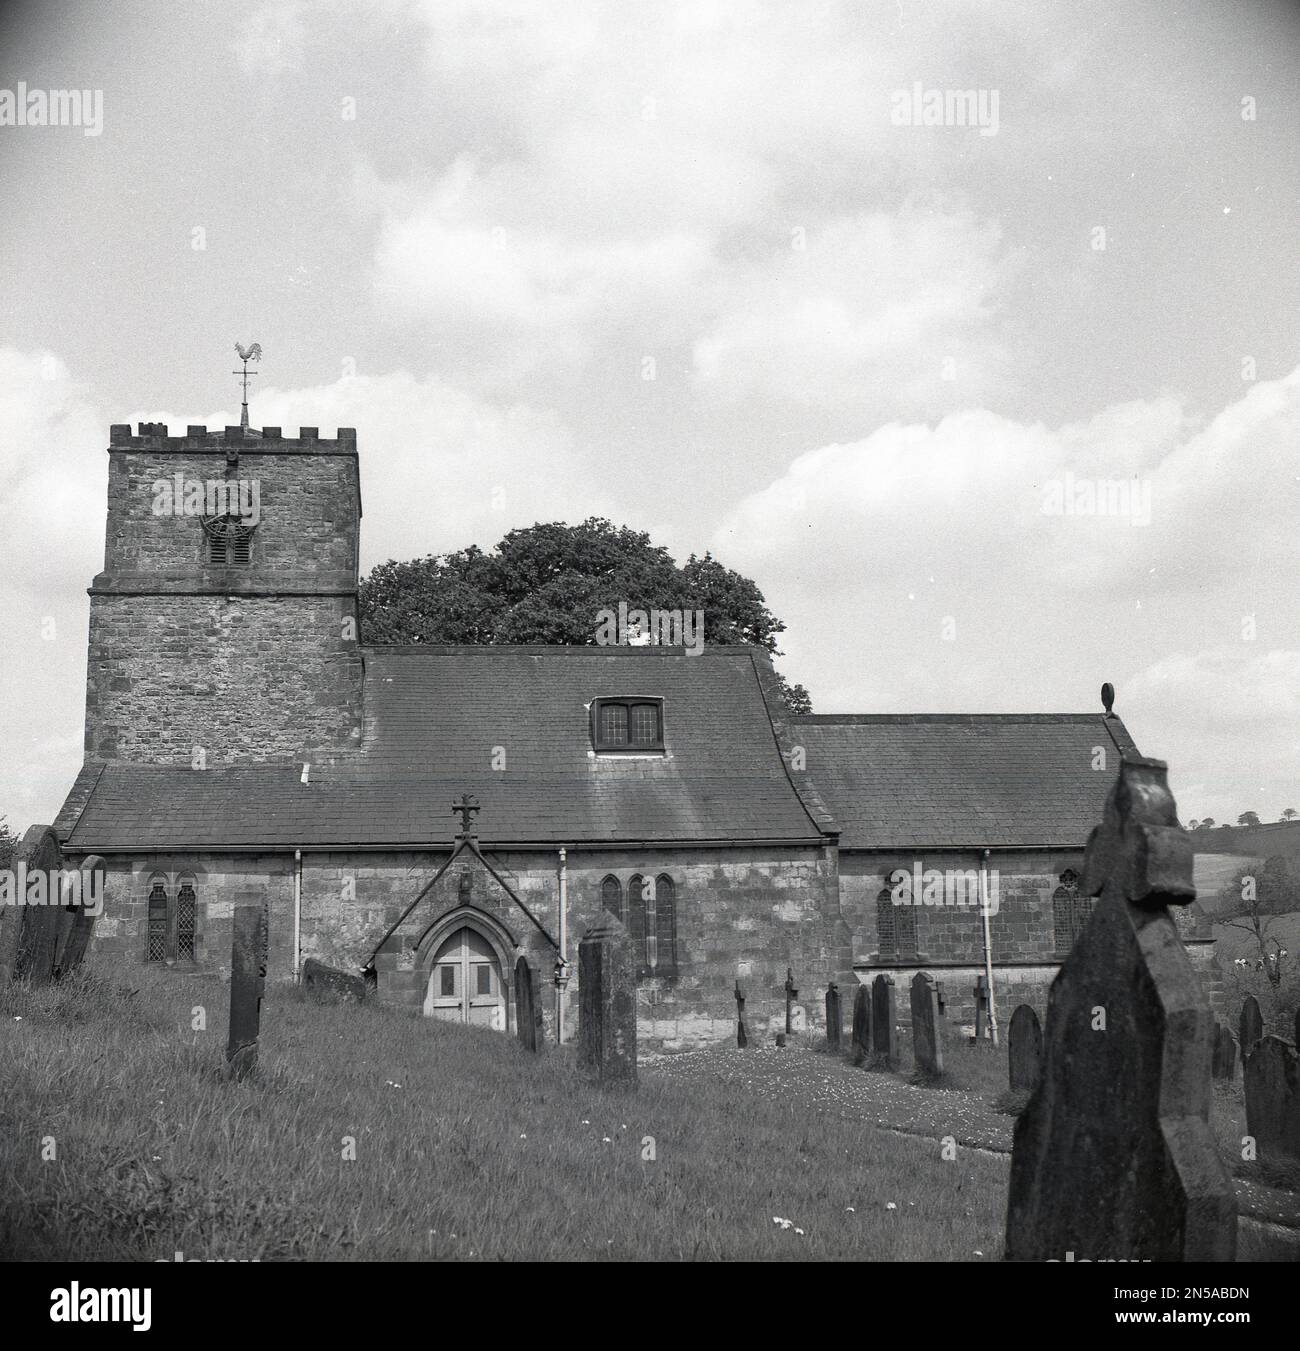 1964, historique, vue extérieure de l'église All Saints à Kirby Underdale, York, Angleterre, Royaume-Uni, avec tour de l'horloge, un lieu de travail chrétien, dont certaines parties remontent à l'époque normande. Banque D'Images